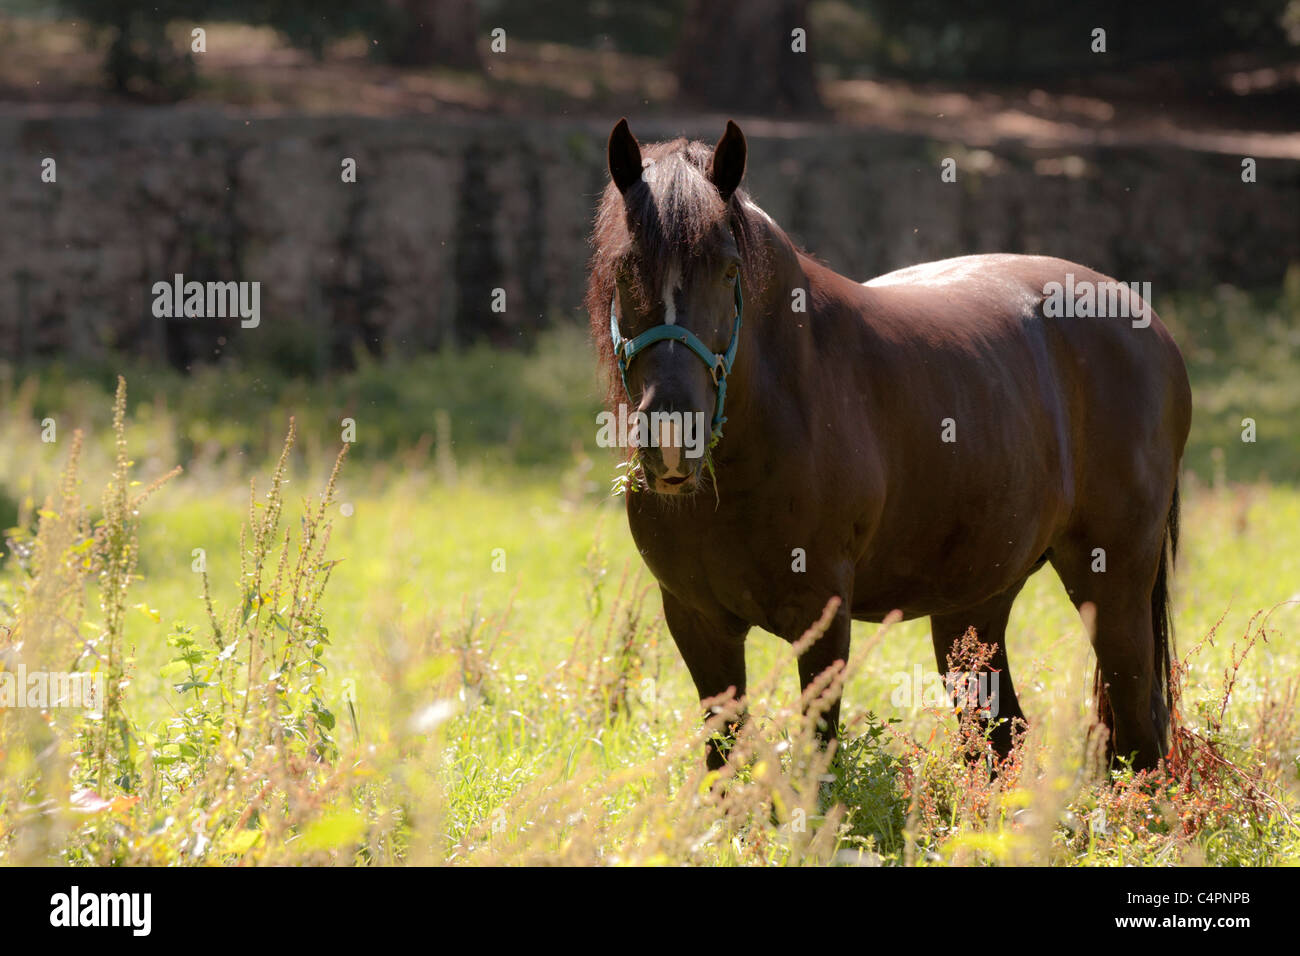 Cavalo domesticado une comer erva. Tirada Foto com uma Canon 40D e uma objectiva EF 70-200mm f/2.8 L IS USM II da mesma marca. Banque D'Images